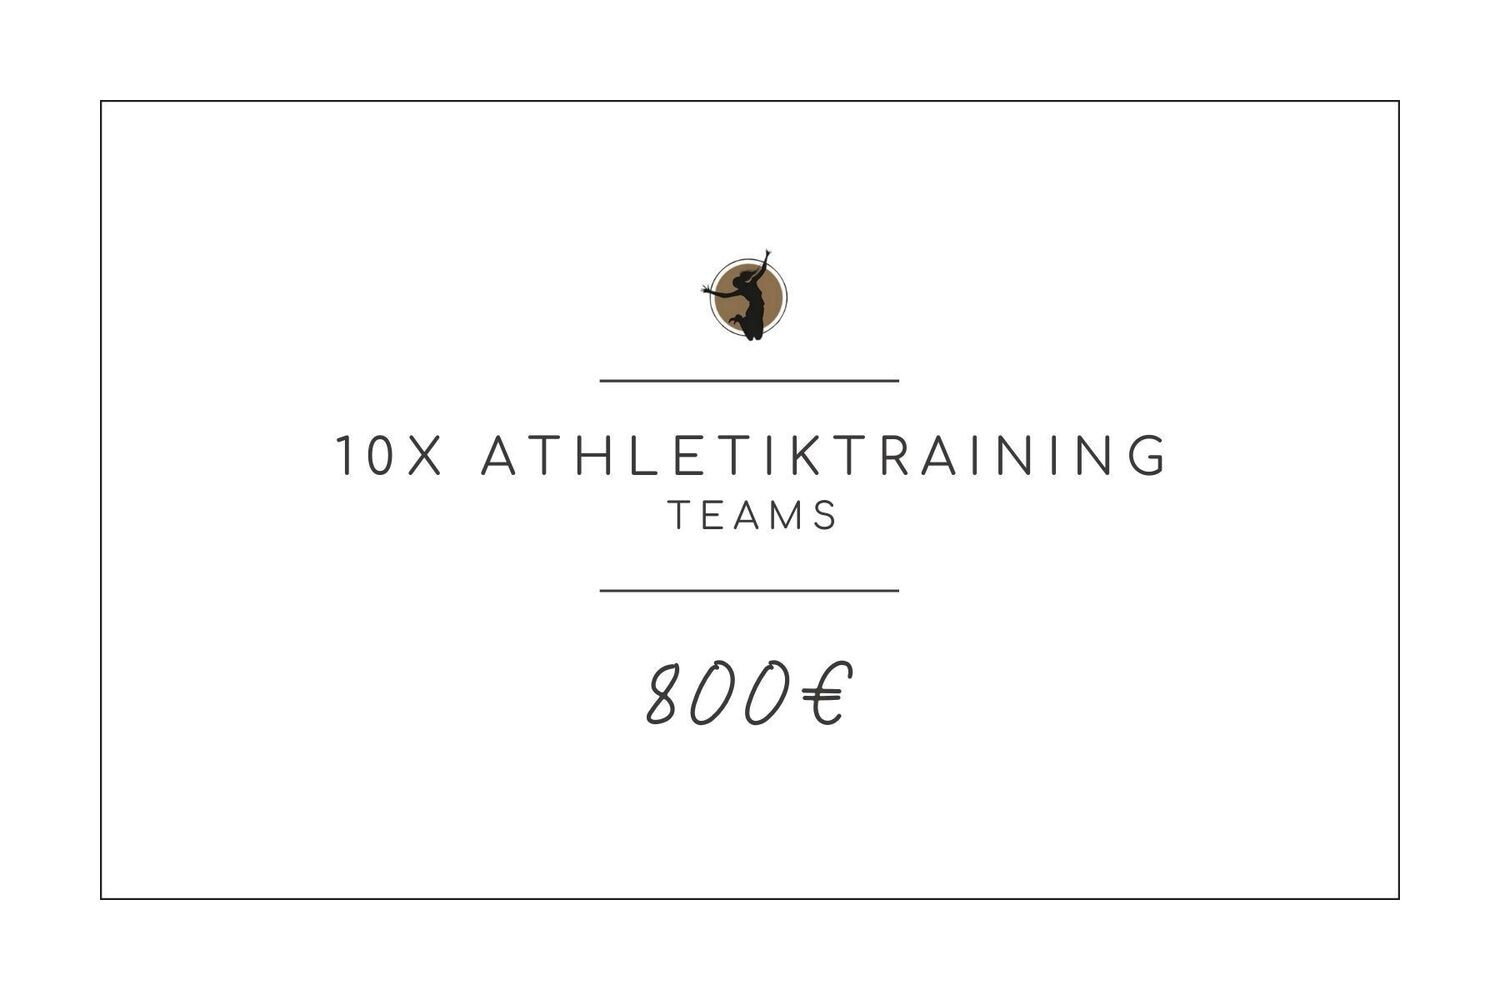 10x Athletiktraining (Teams)